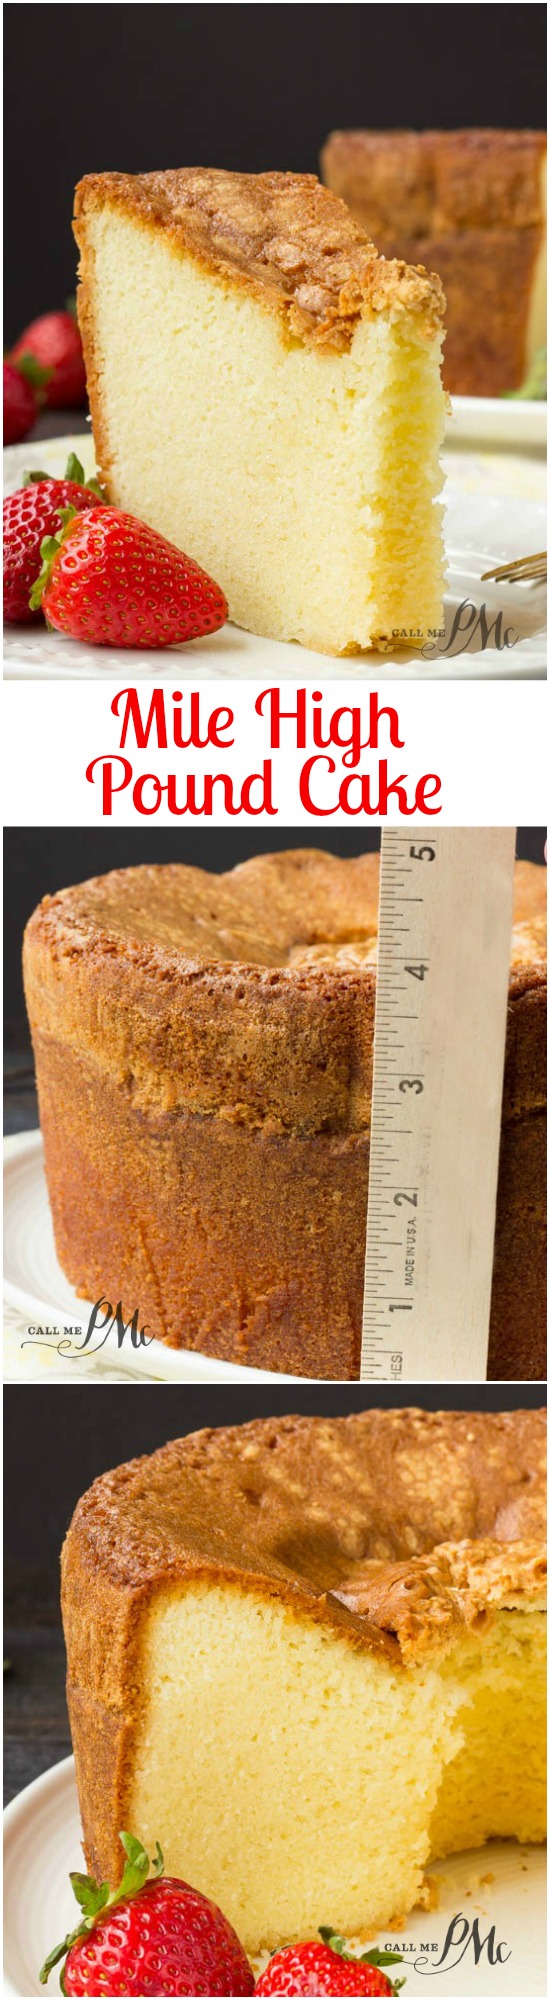 https://www.callmepmc.com/wp-content/uploads/2015/10/Mile-High-Pound-Cake-recipe-via-callmepmc.com_.jpg